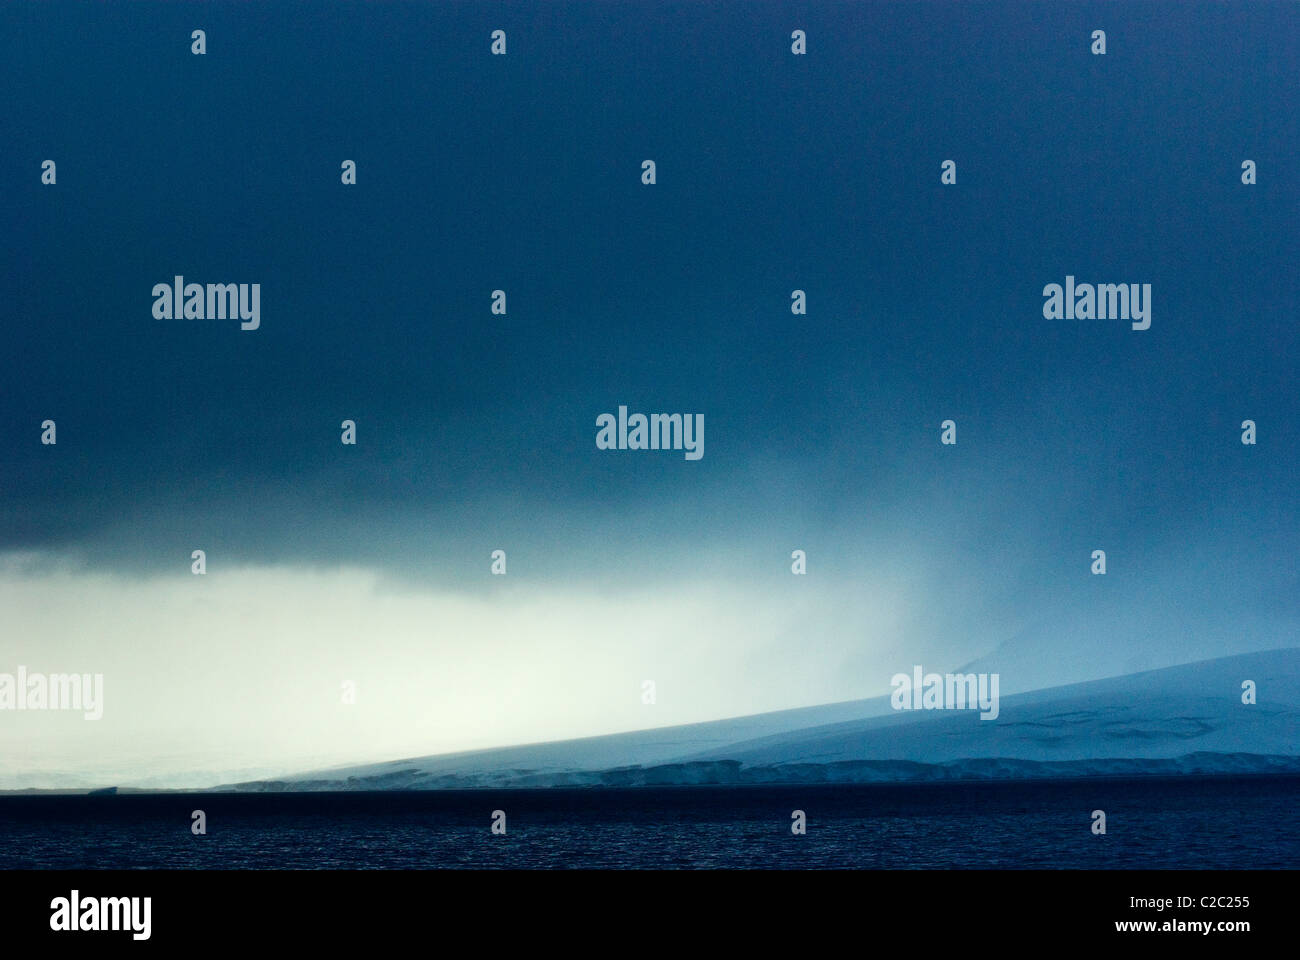 Una minacciosa tempesta scende oltre un imponente ghiacciaio in esecuzione nel mare. Foto Stock